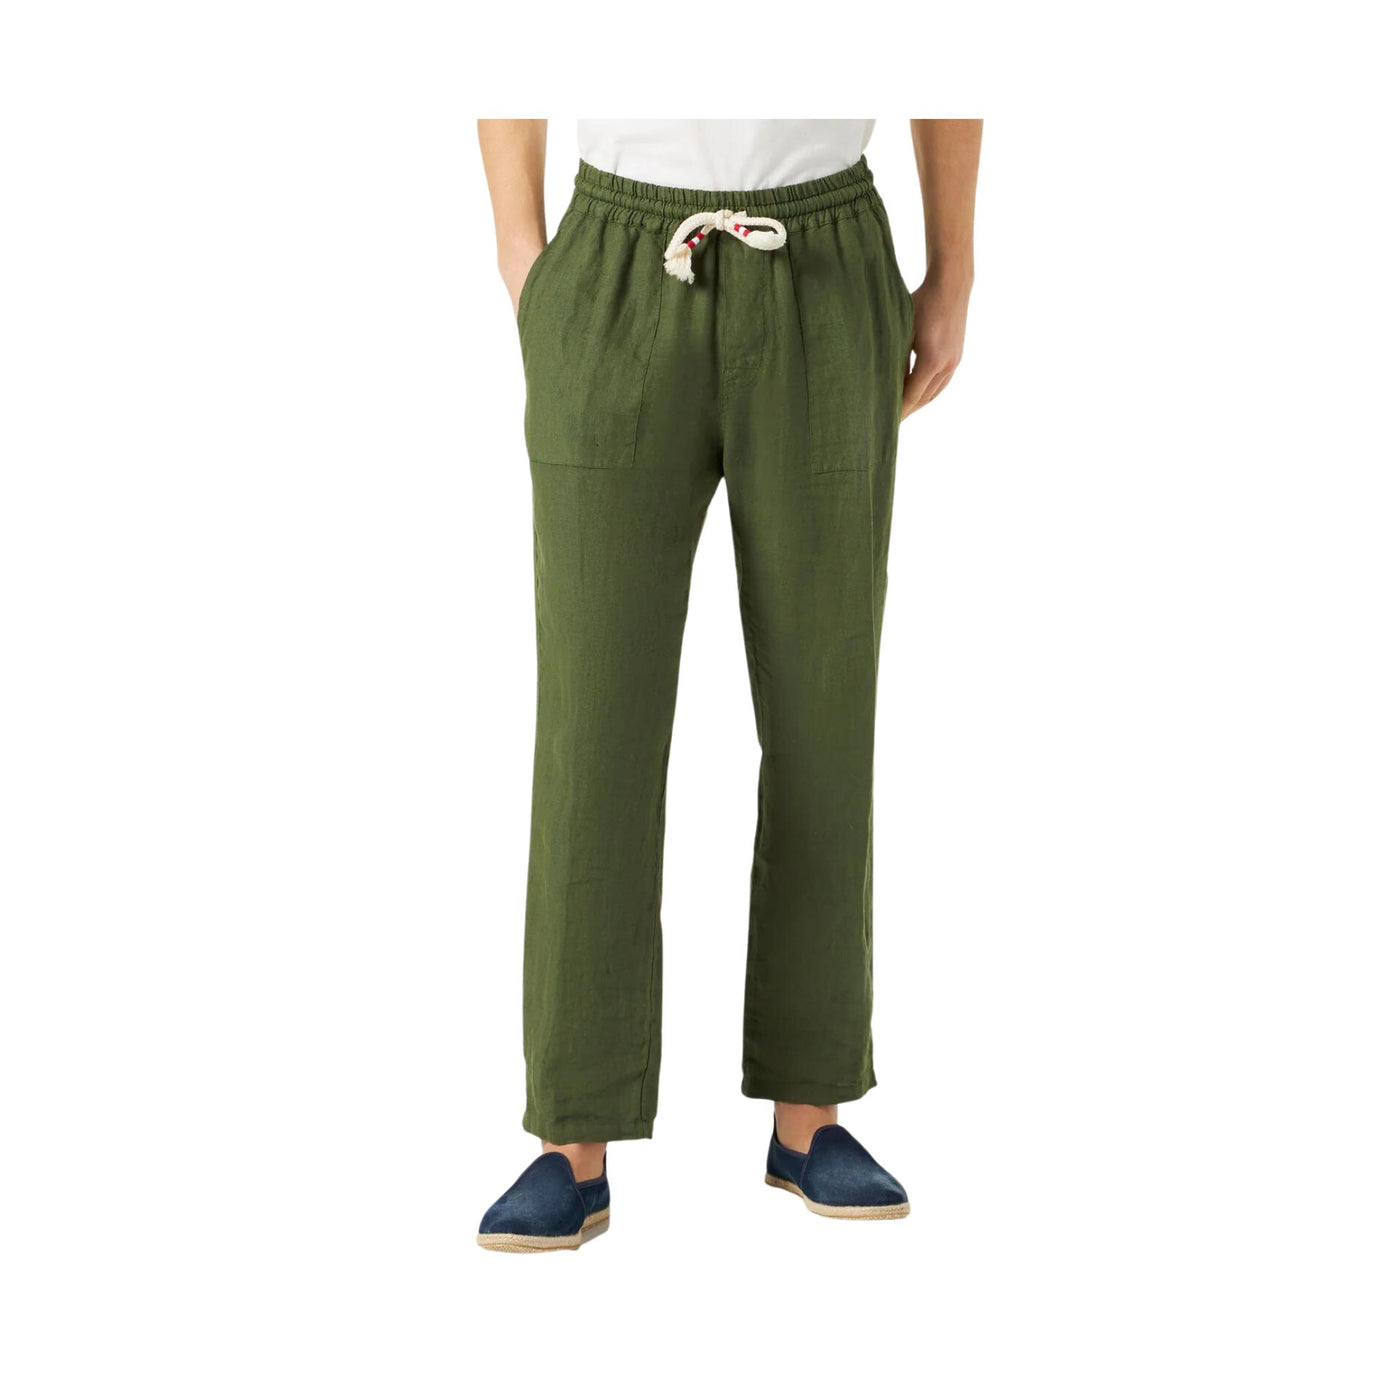 Men's solid color linen trousers